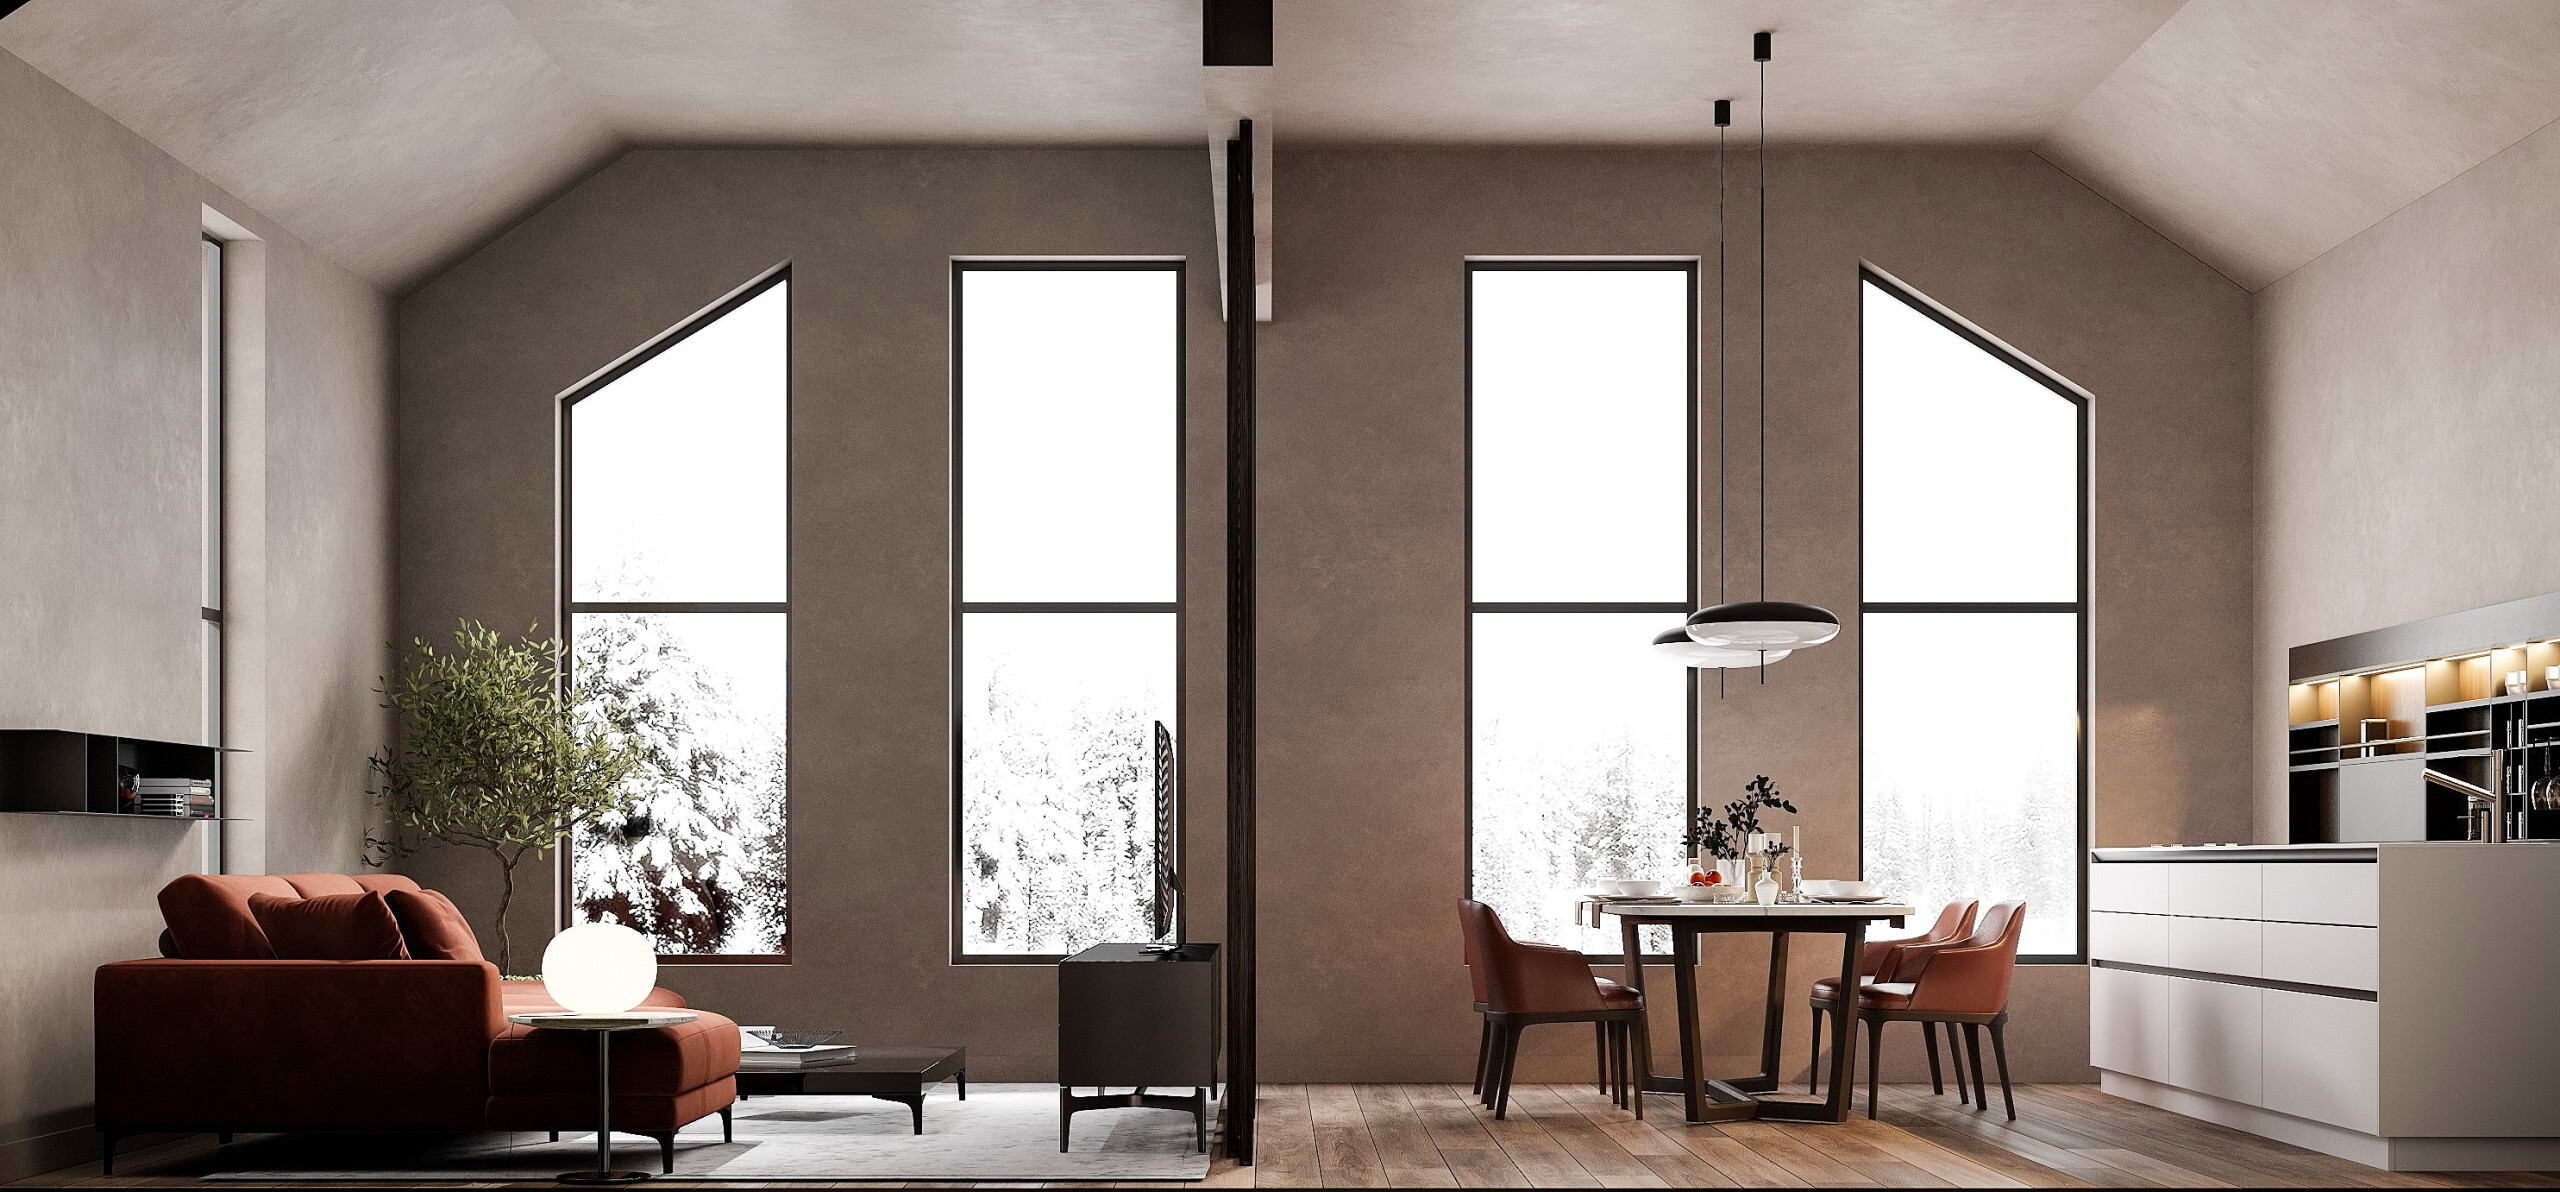 Интерьер кухни с окном, жалюзи, вертикальными жалюзи, рейками с подсветкой и подсветкой настенной в современном стиле